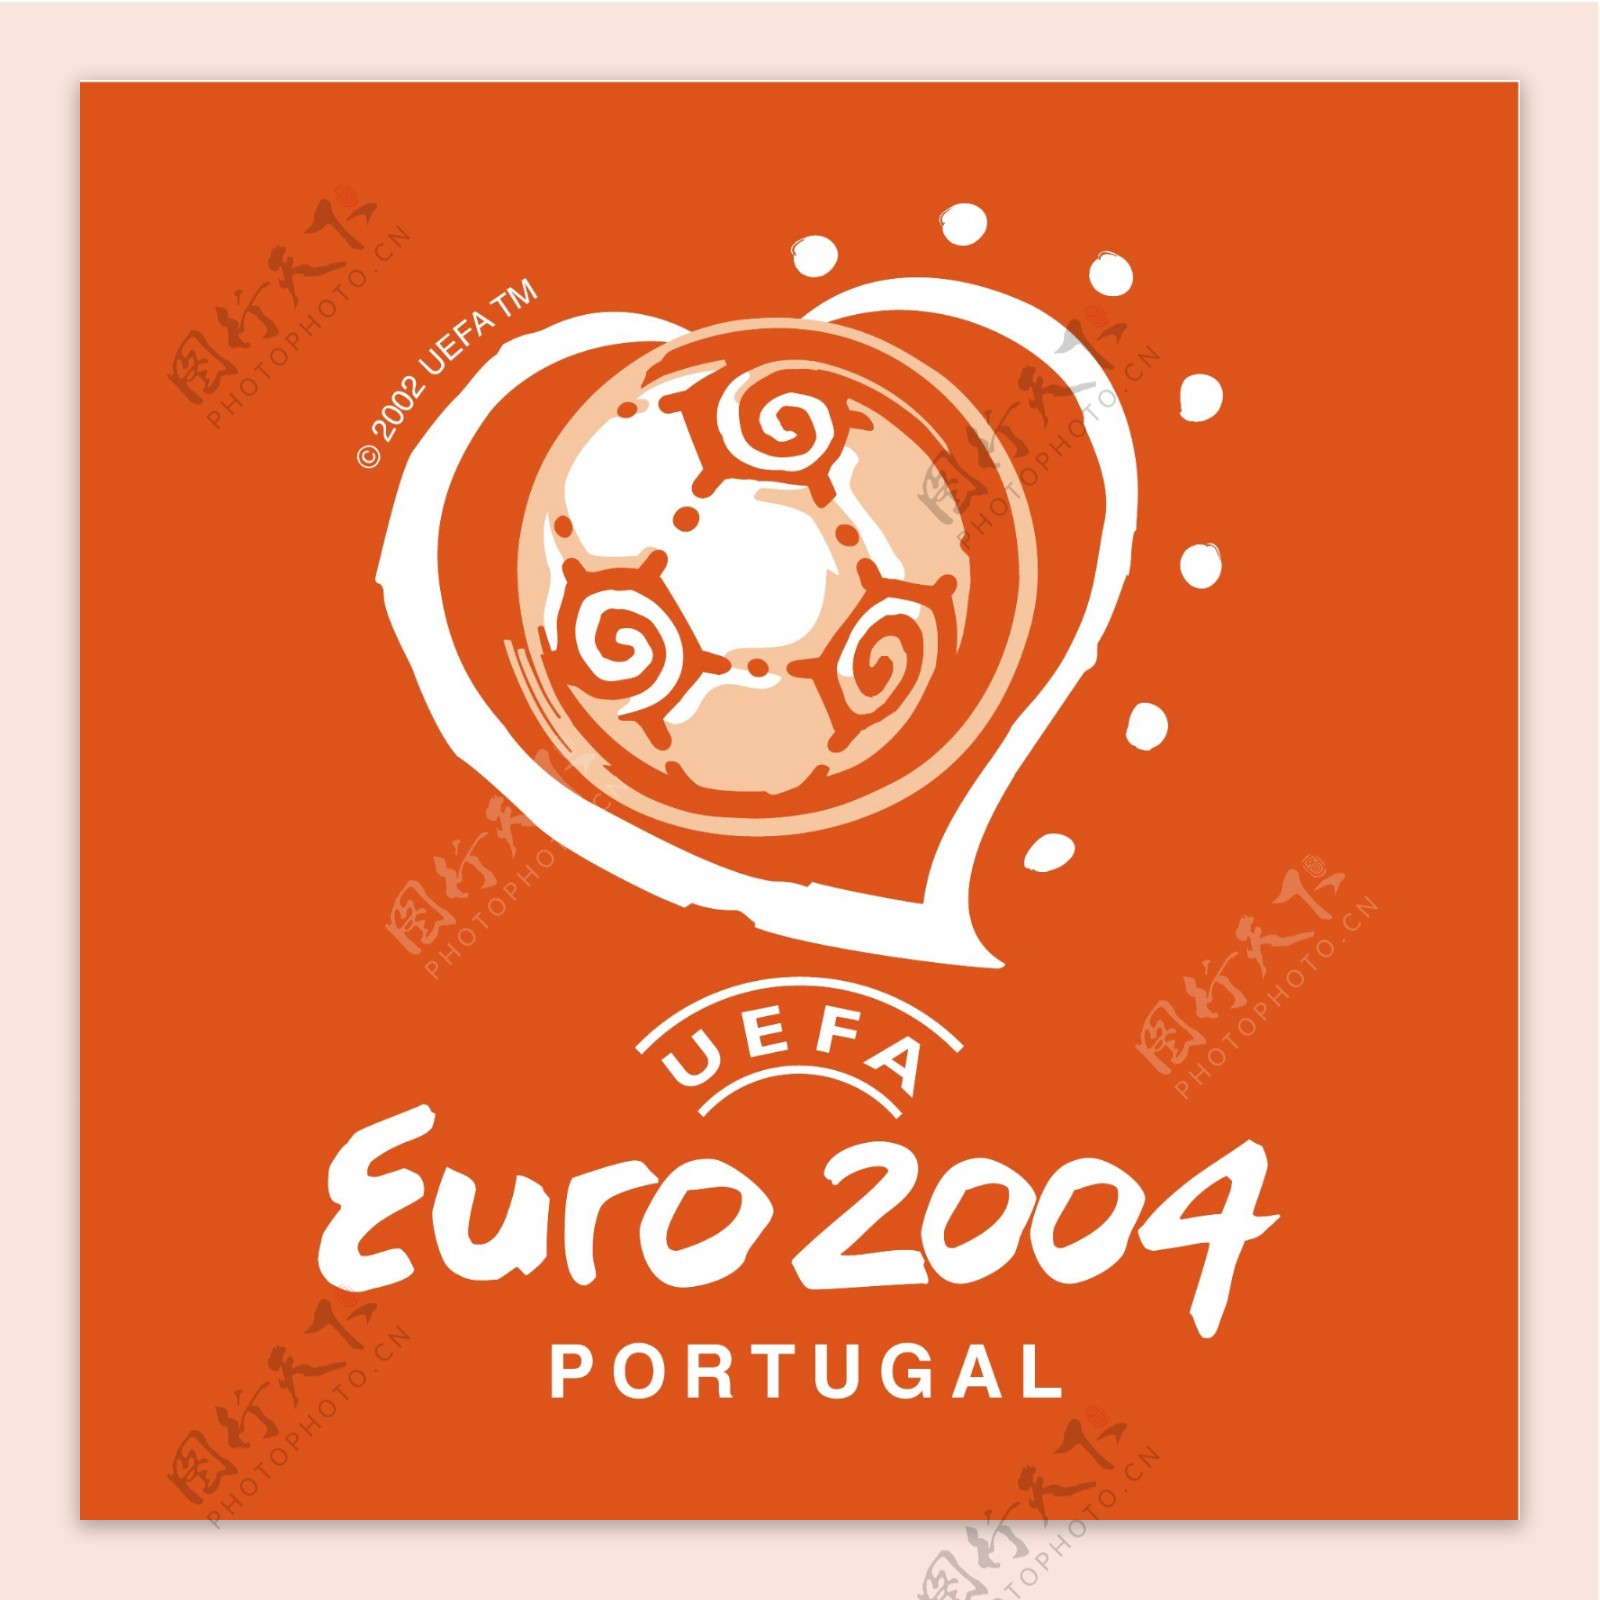 欧洲杯2004葡萄牙27